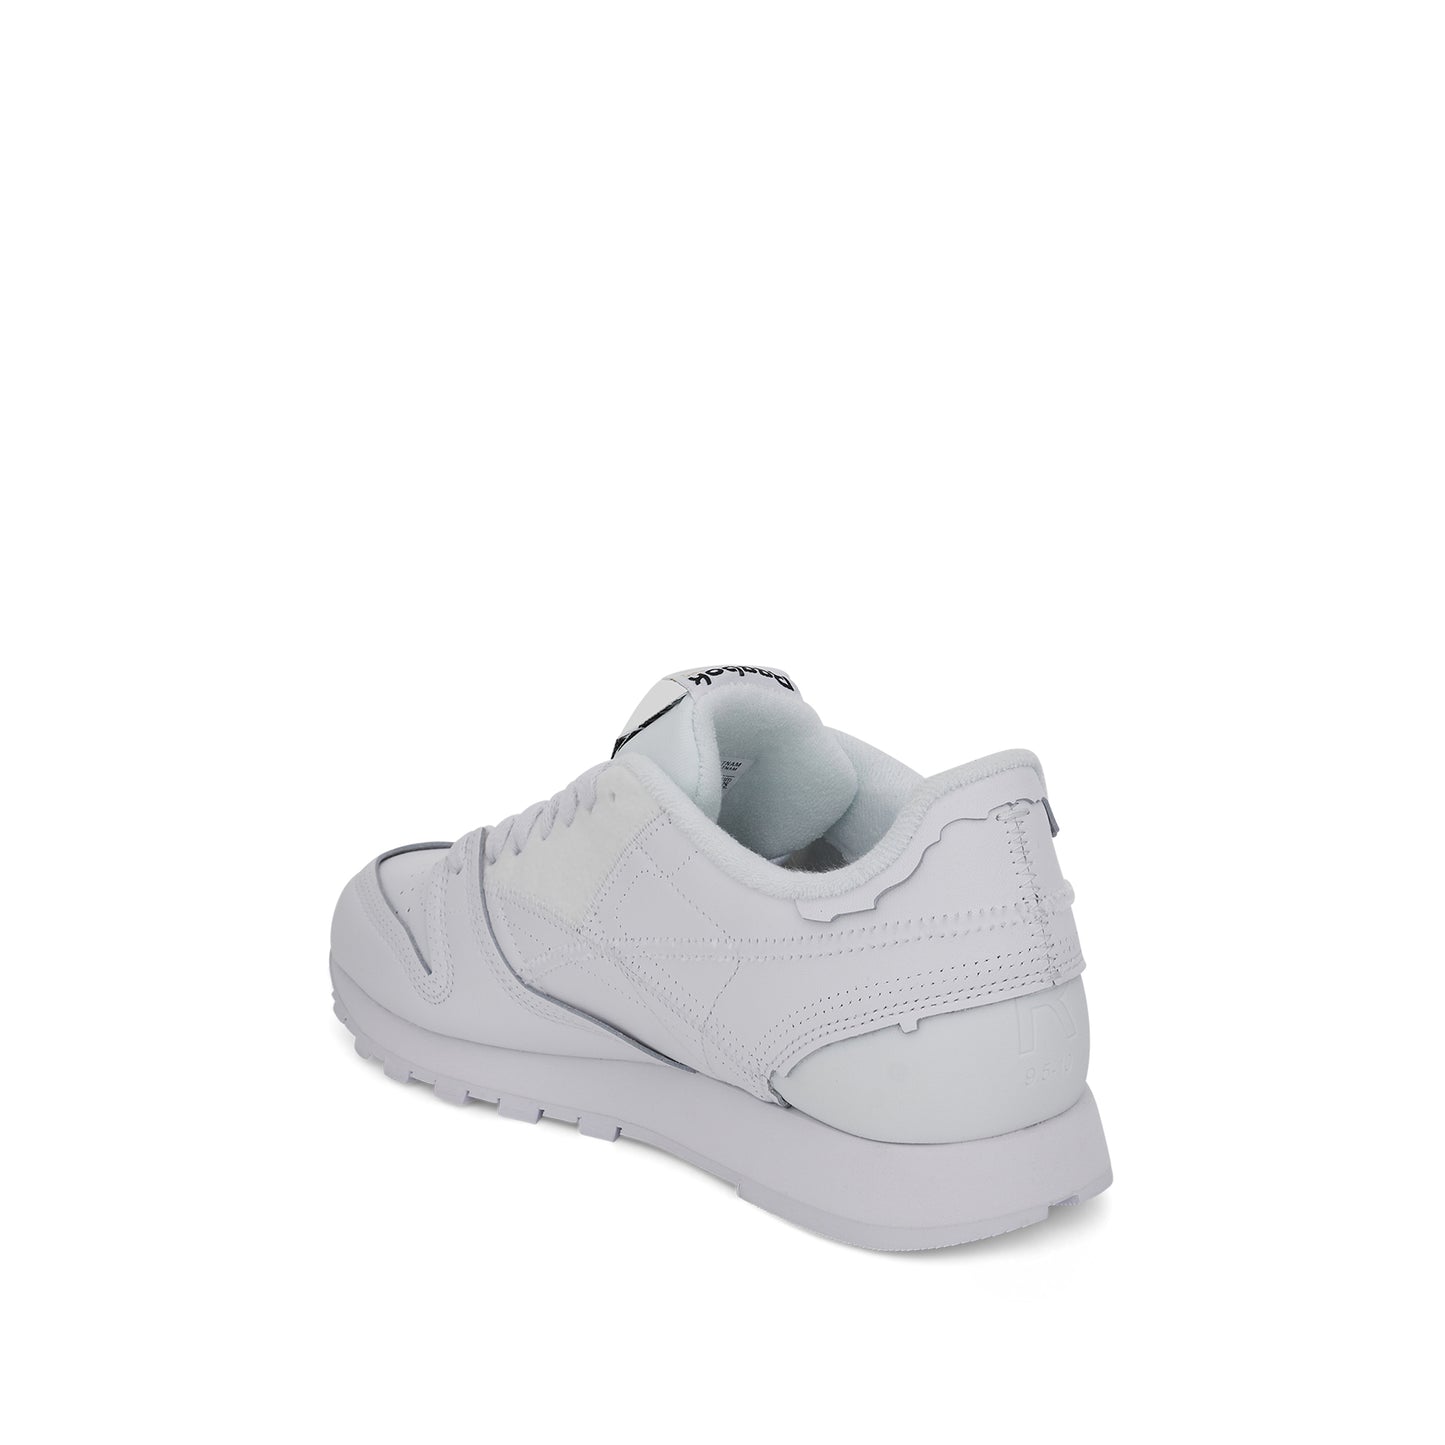 Maison Margiela x Reebok Project 0 CL Memory Of Sneaker in White